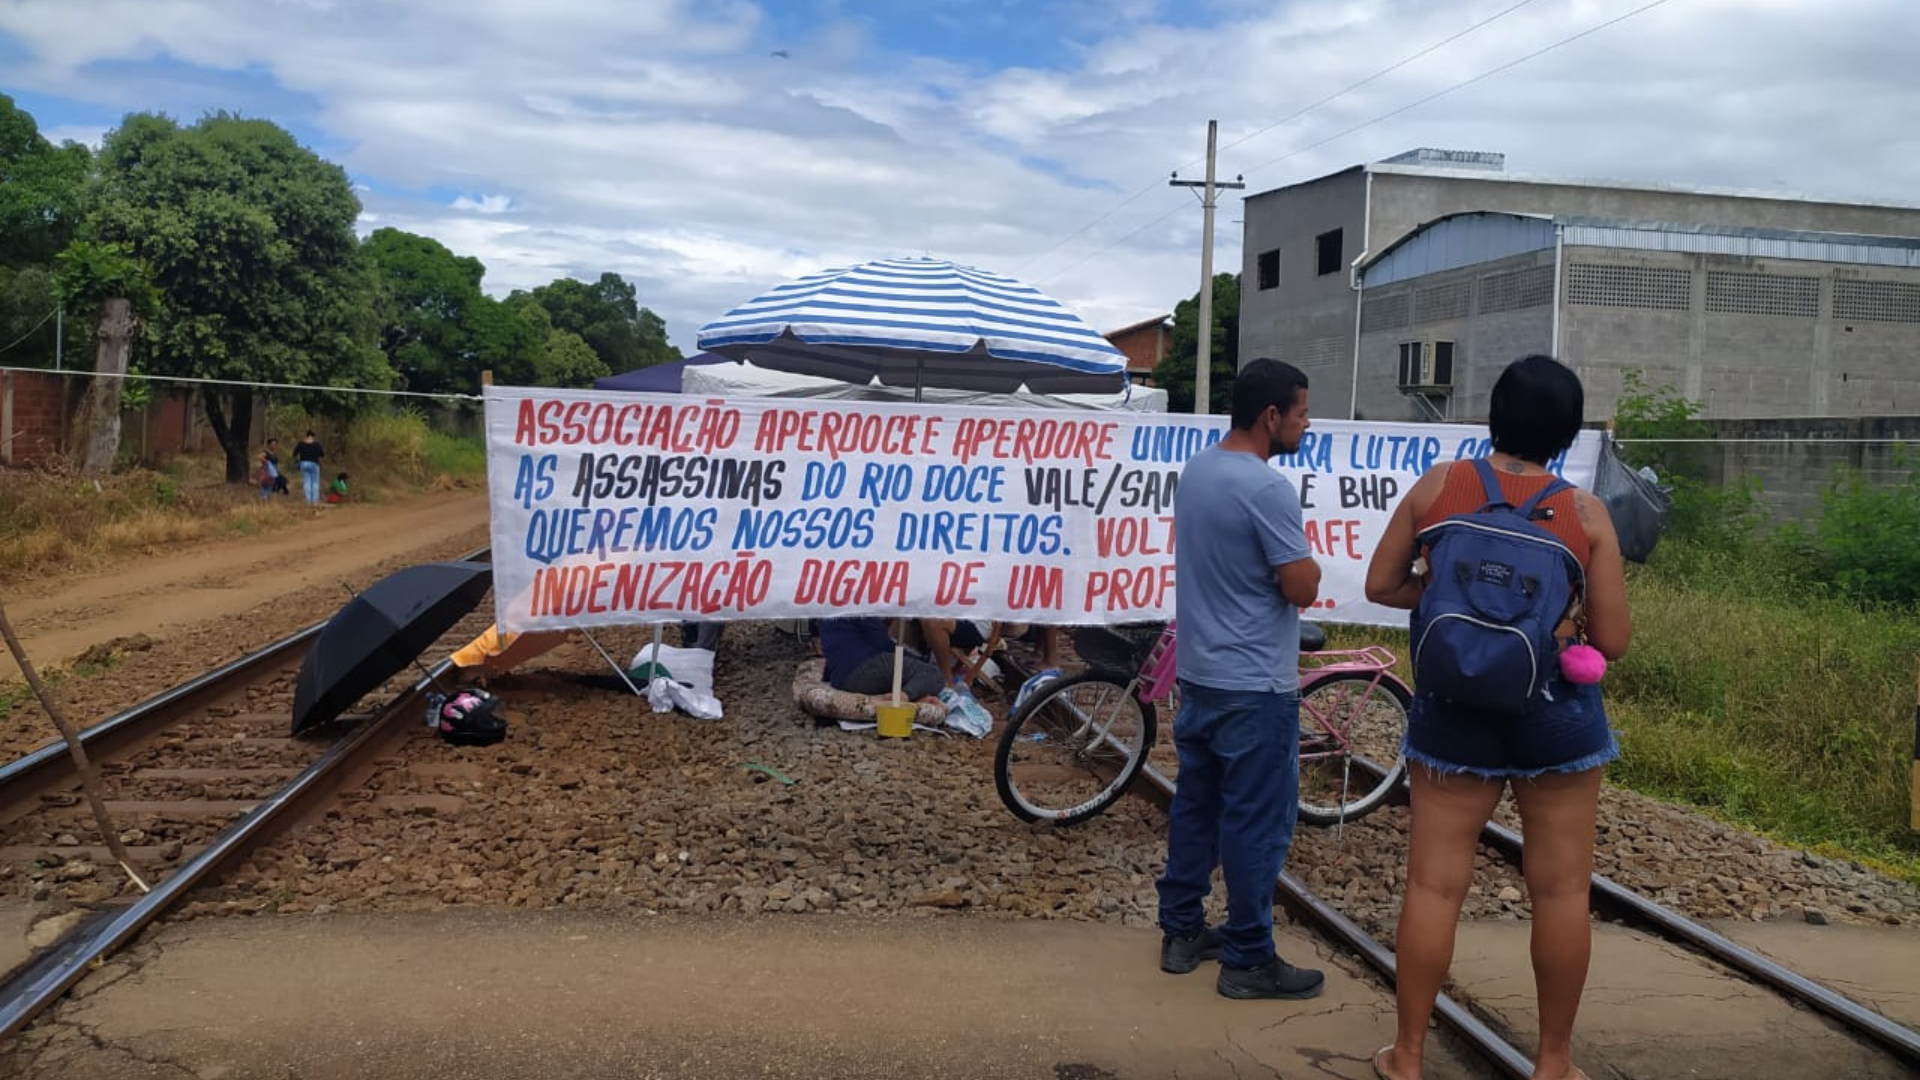 Protesto ocupou trecho da Estrada de Ferro Vitória a Minas, em Baixo Guandu, até por volta das 22h de quarta. Quem iria viajar, pode remarcar ou pedir reembolso